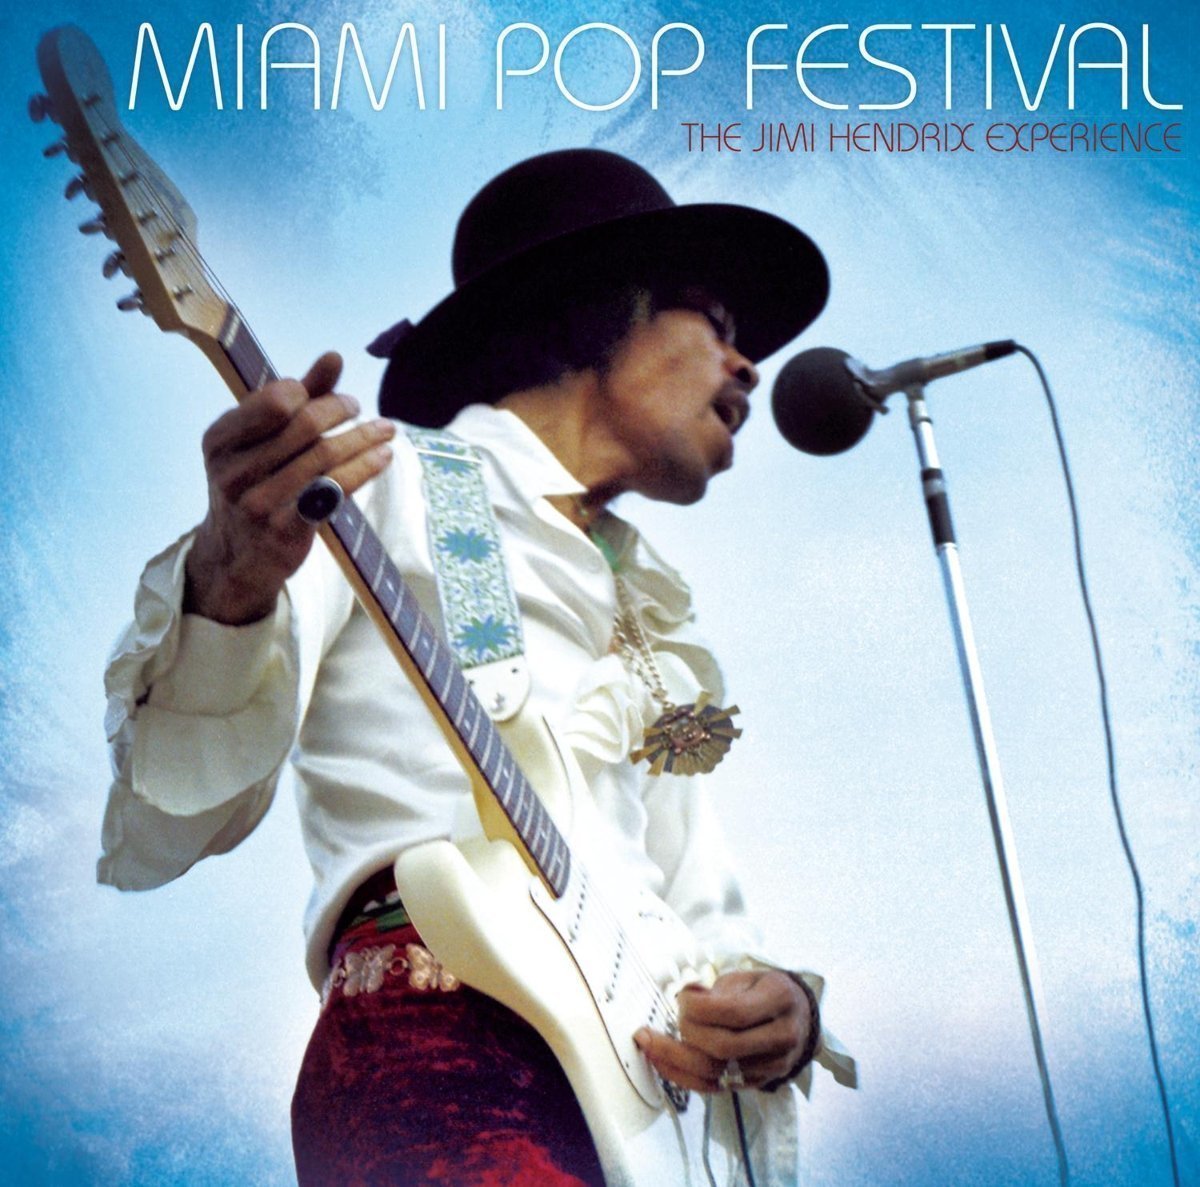 Disco de vinil The Jimi Hendrix Experience Miami Pop Festival (2 LP)